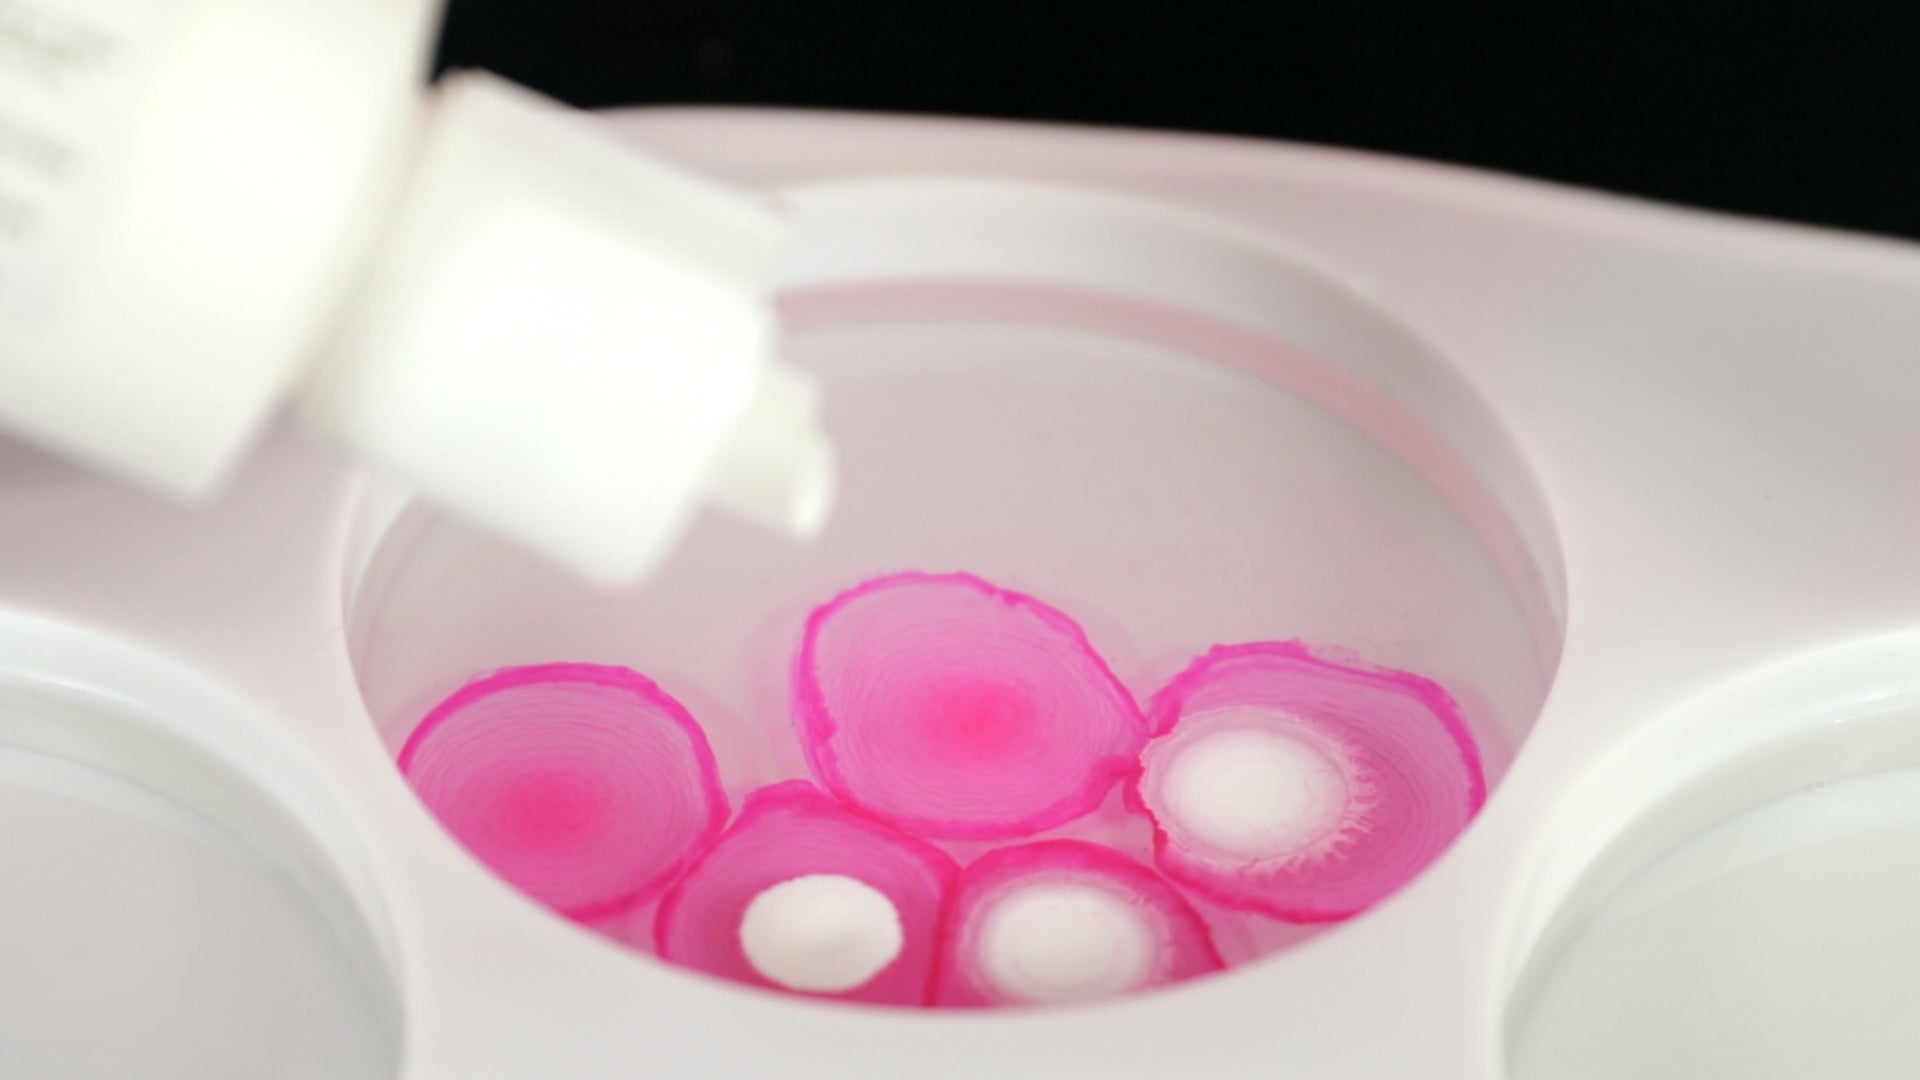 alcohol ink drops to make petri dish coasters